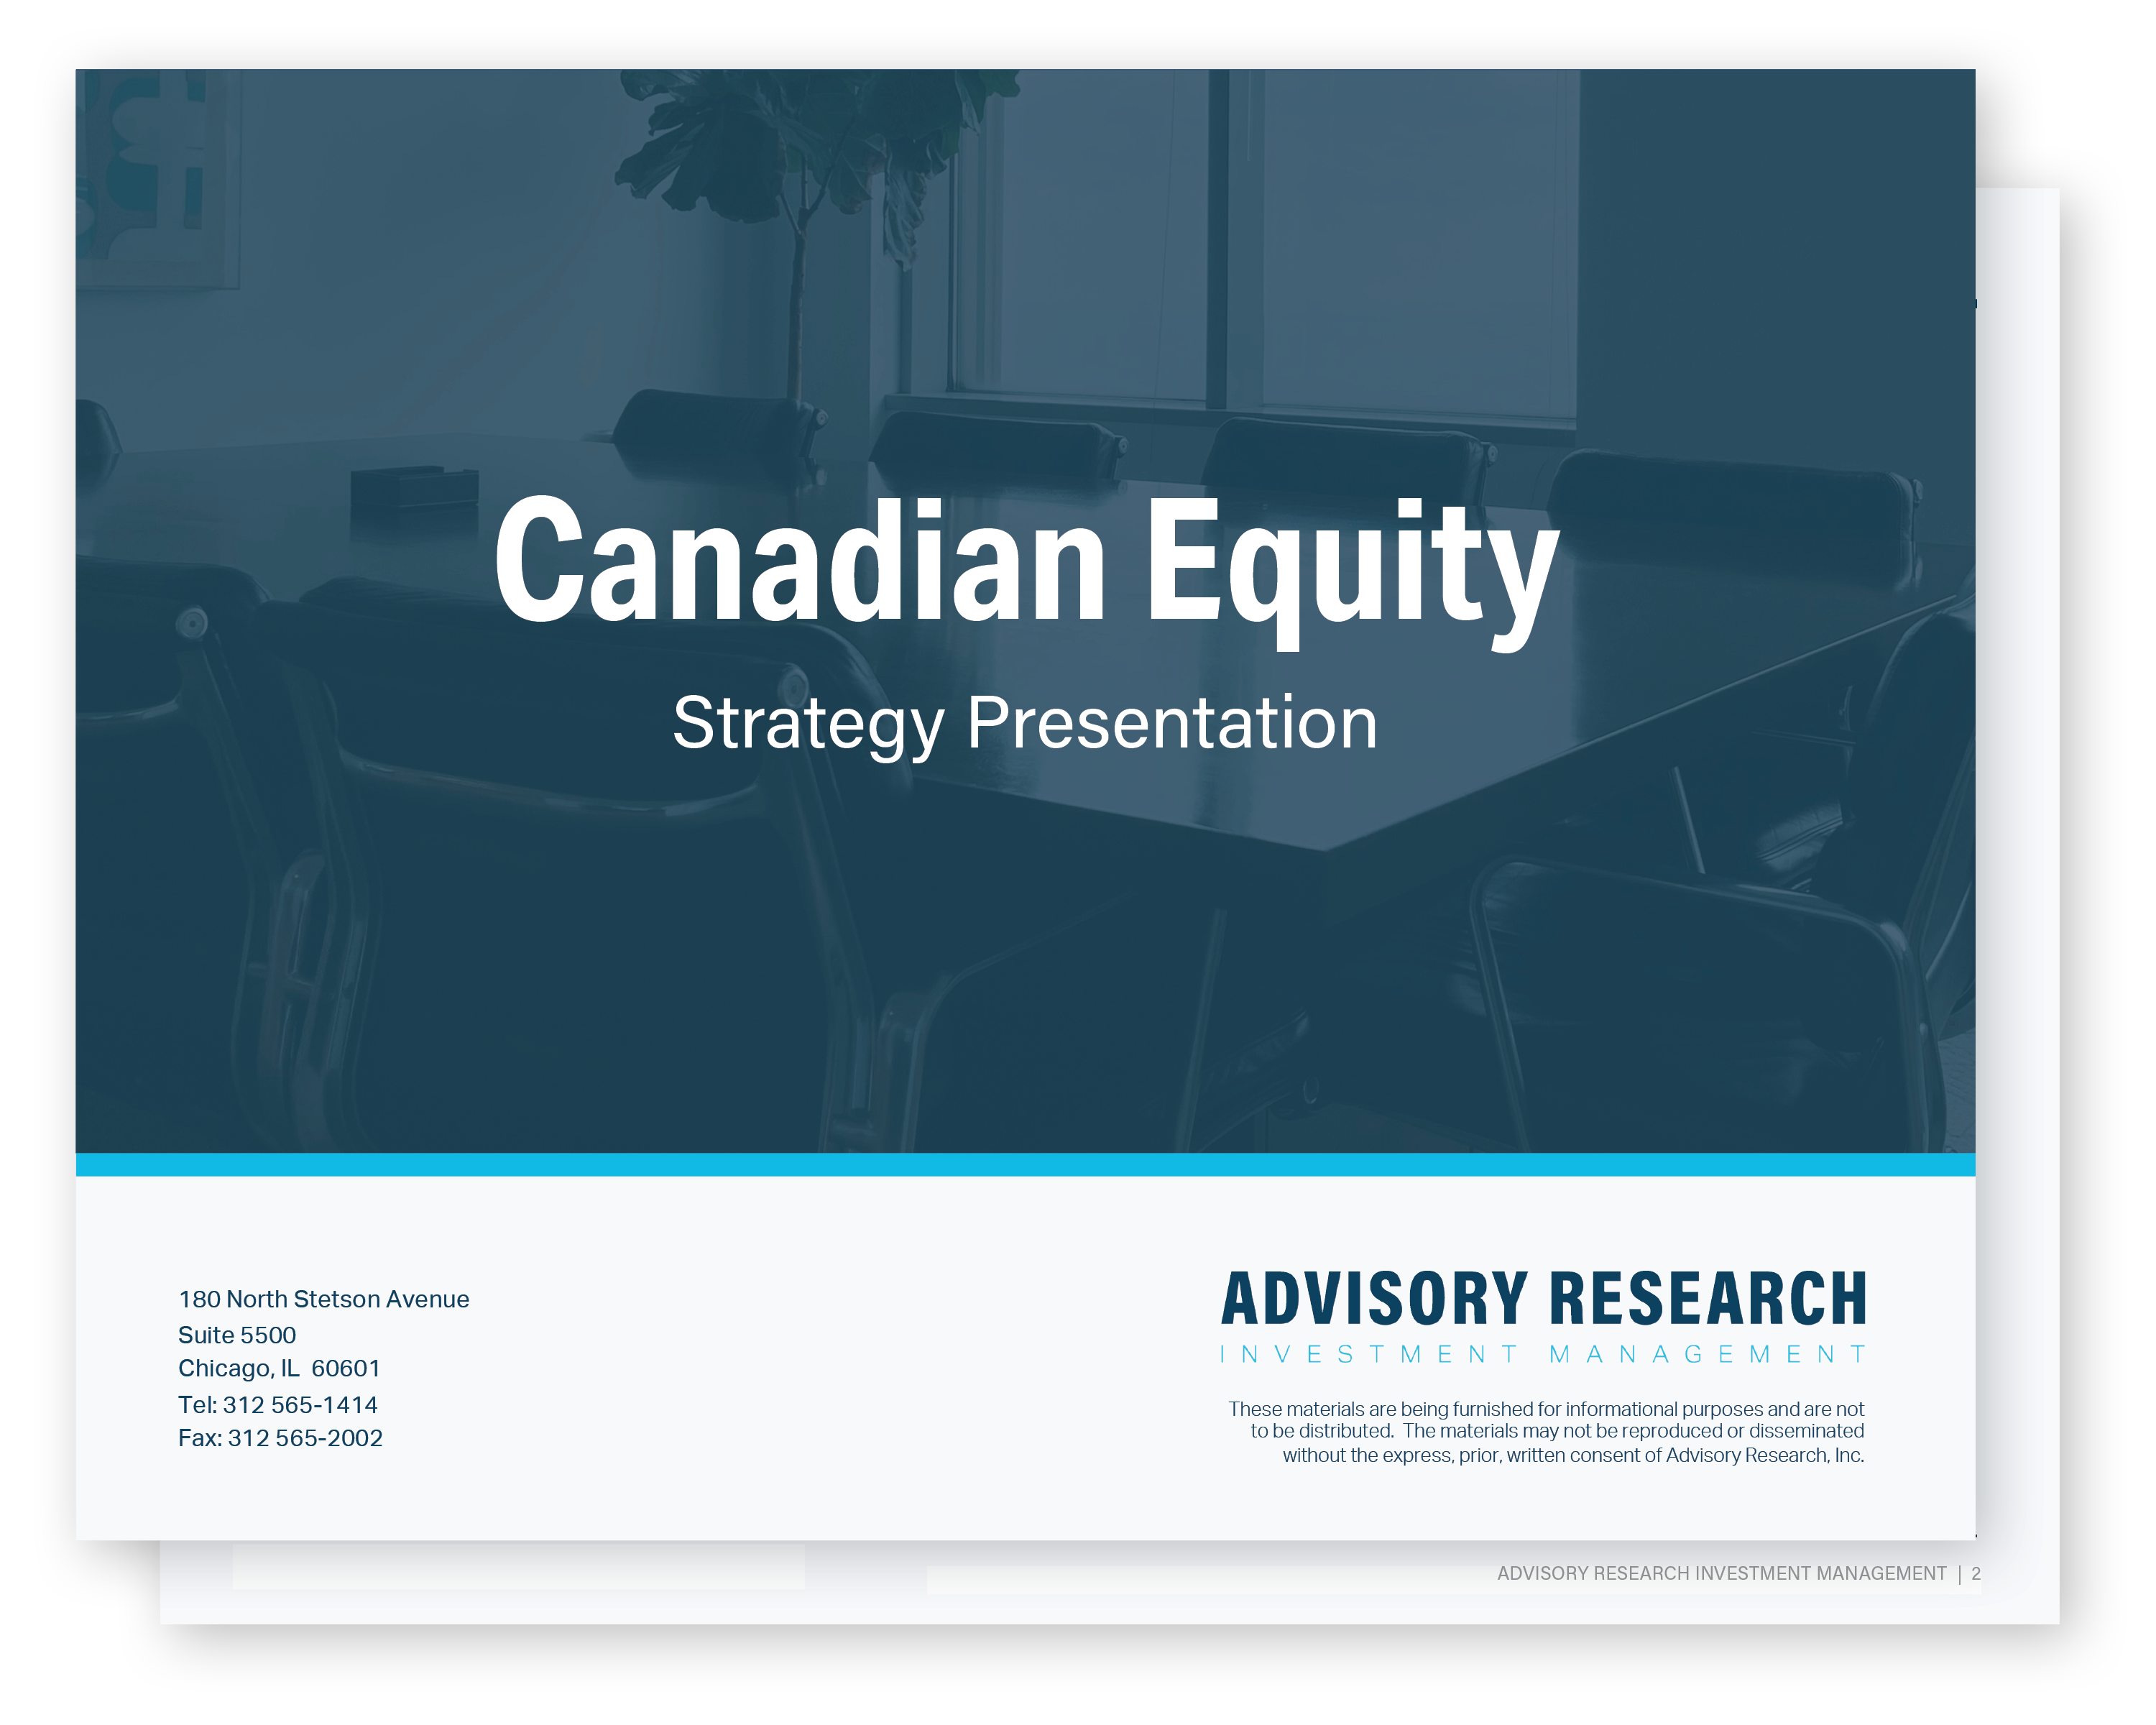 CanadianEquity-Pres